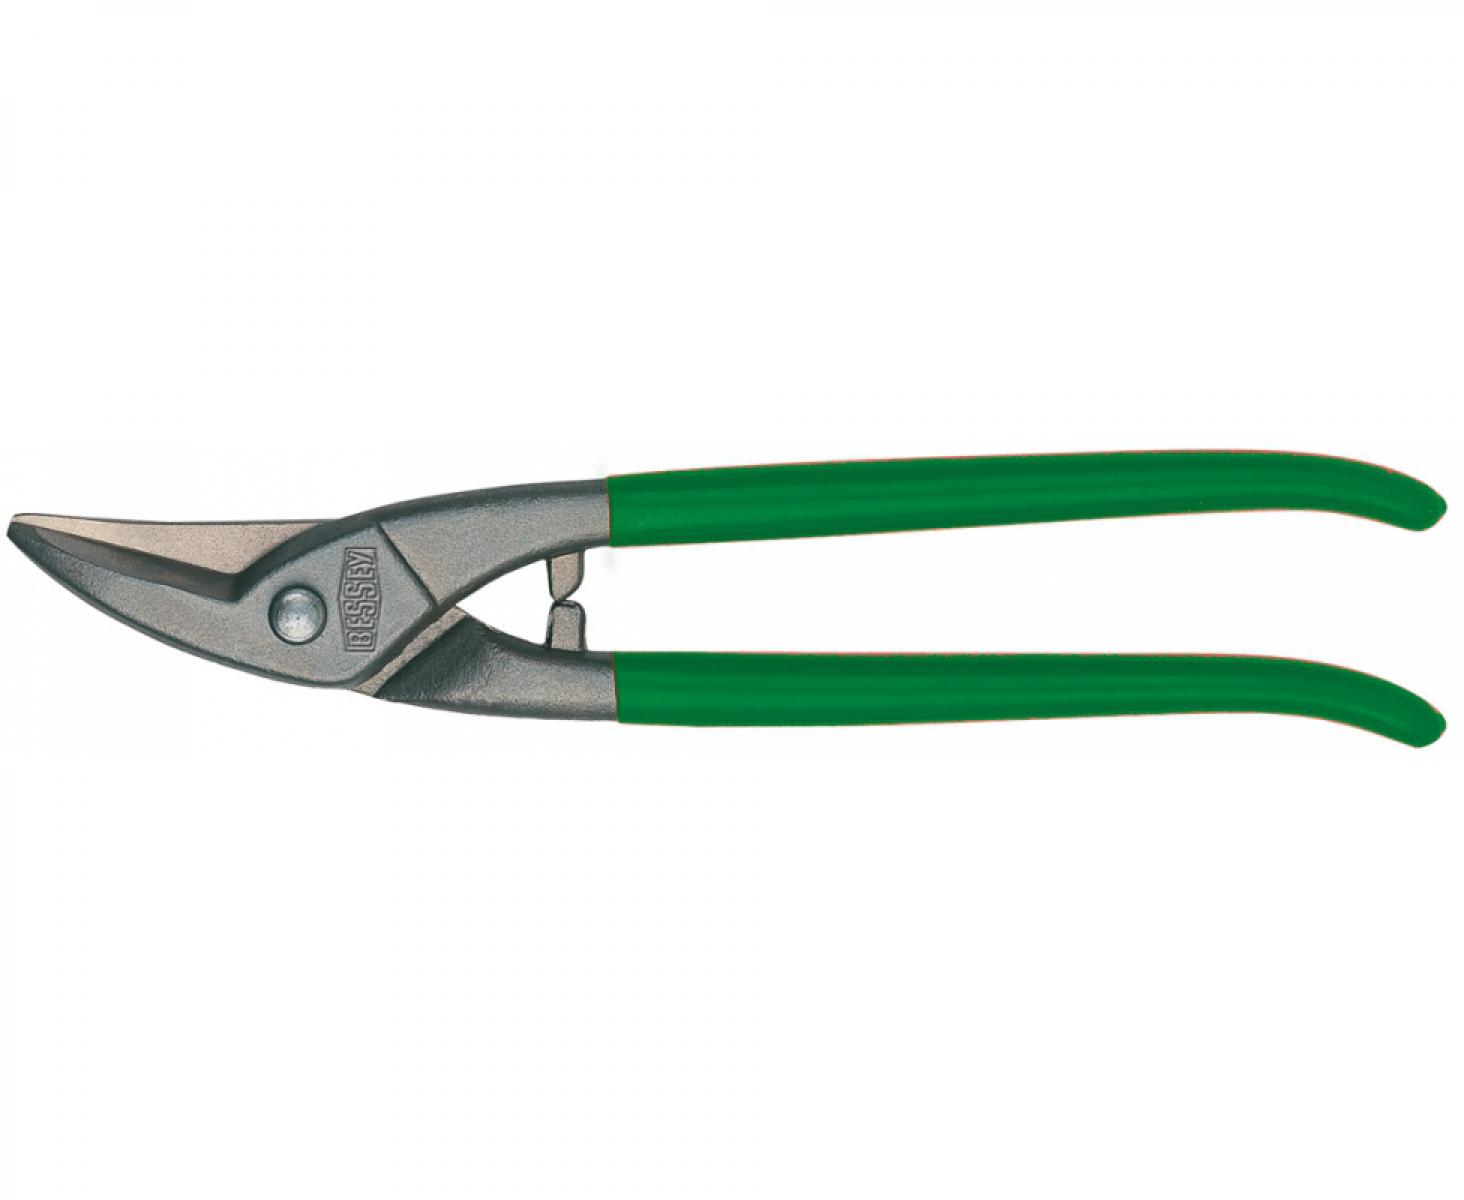 Ножницы для прорезания отверстий в листовом металле Erdi ER-D107-250L леворежущие